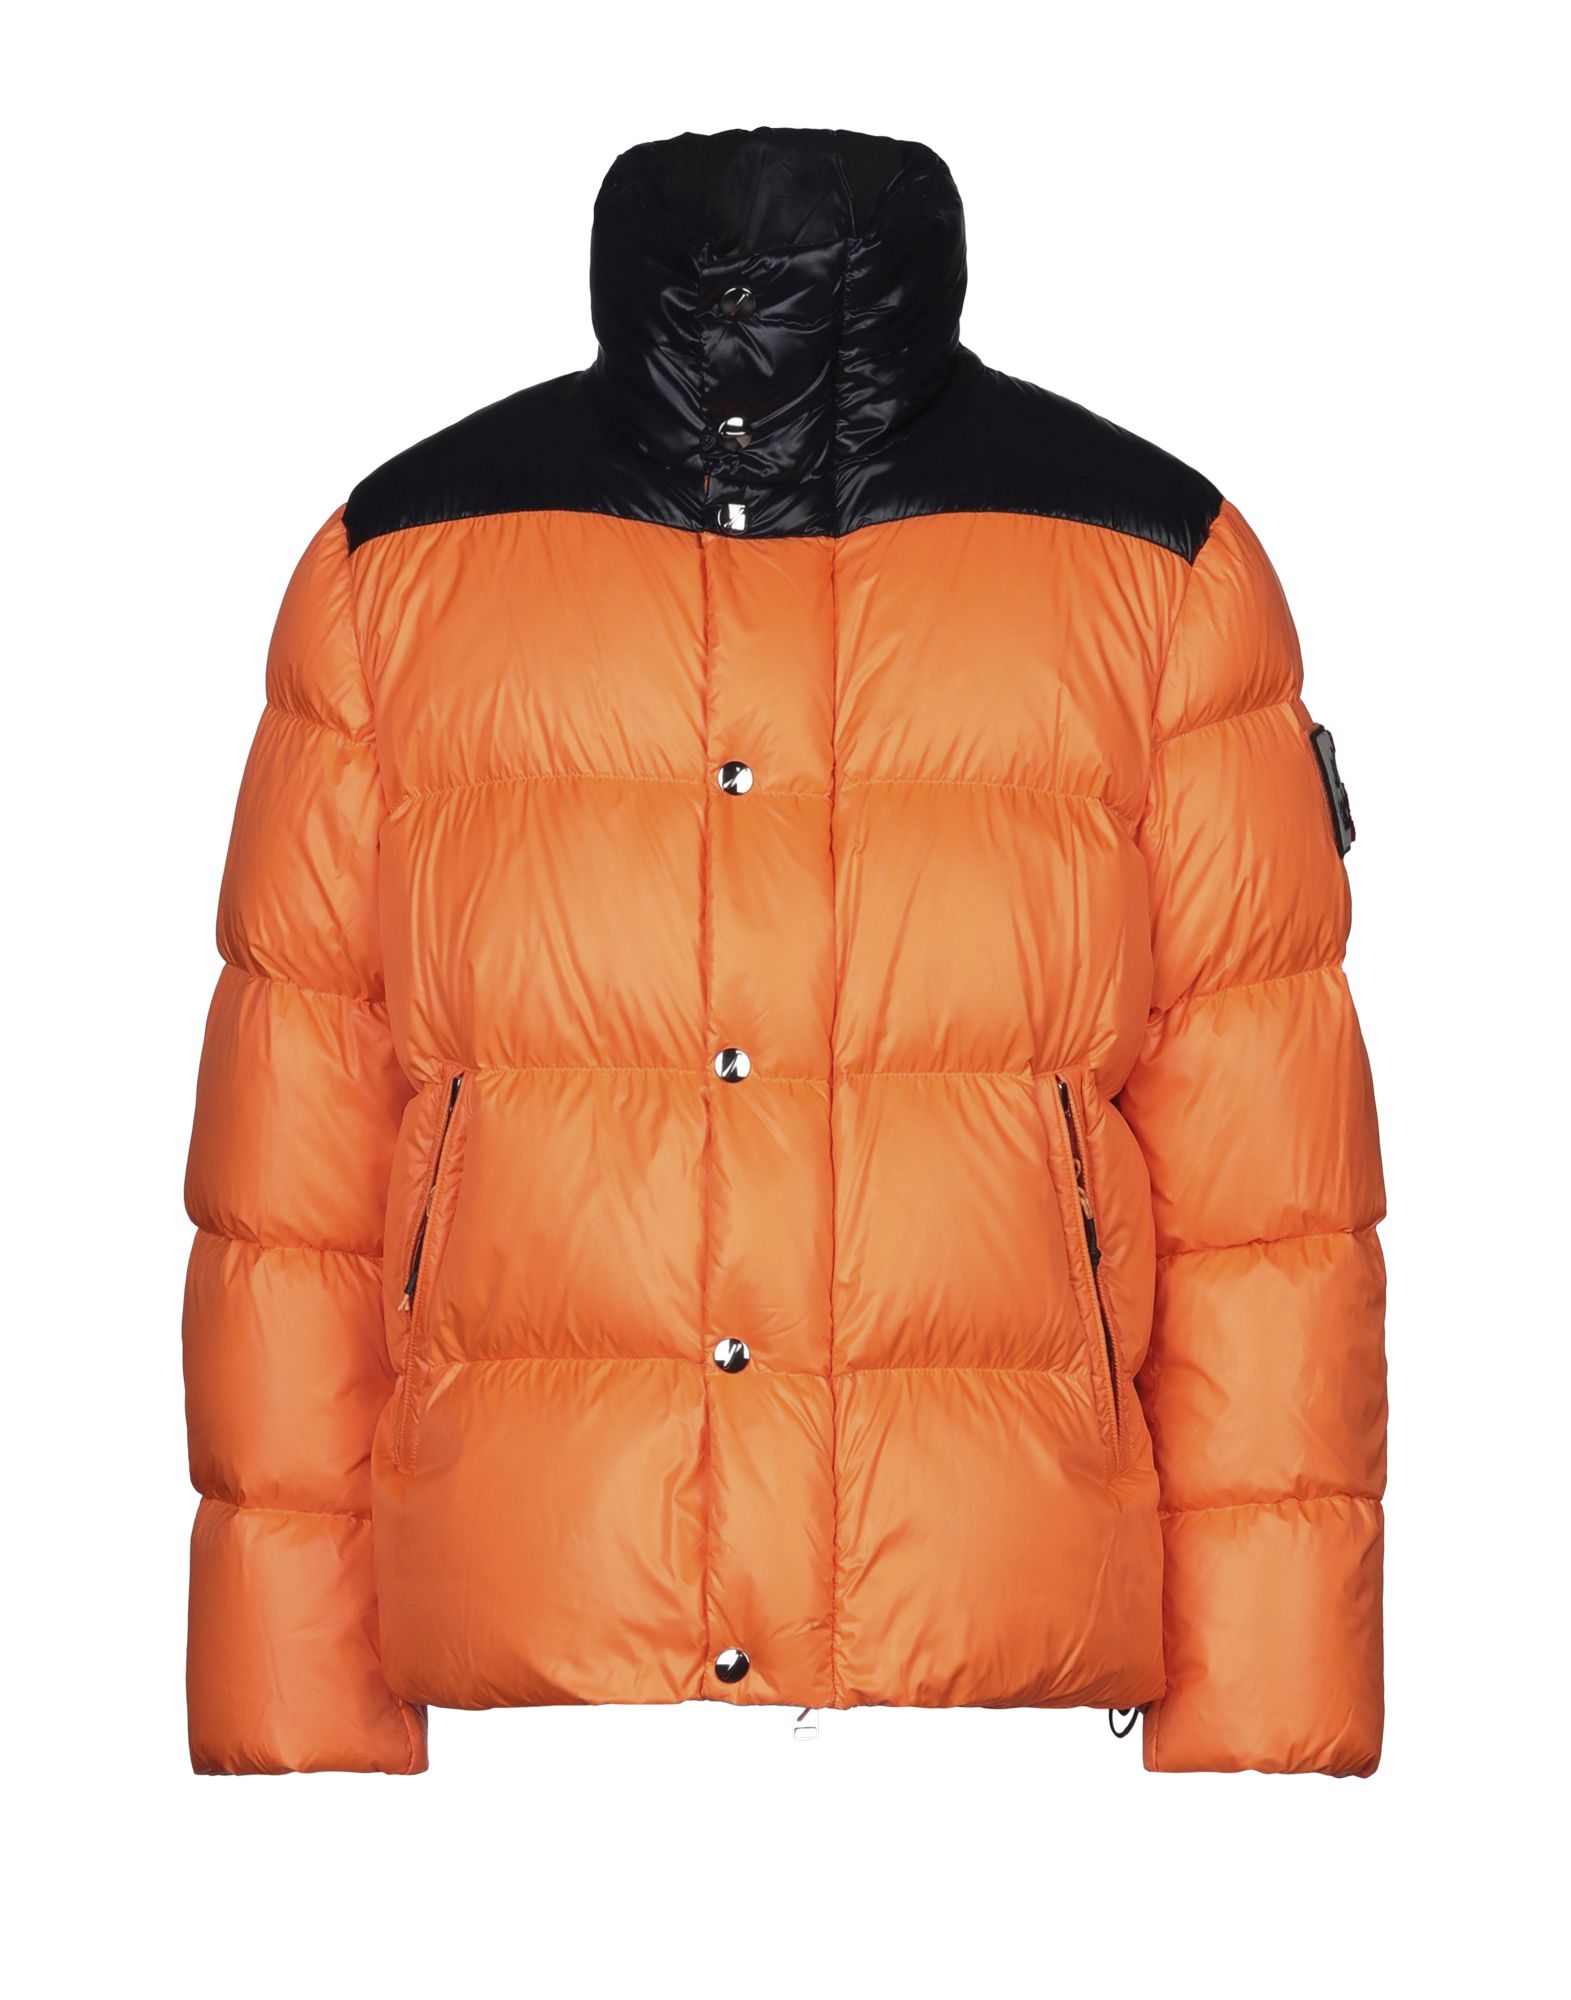 Afterlabel After/label Man Down Jacket Orange Size L Polyester